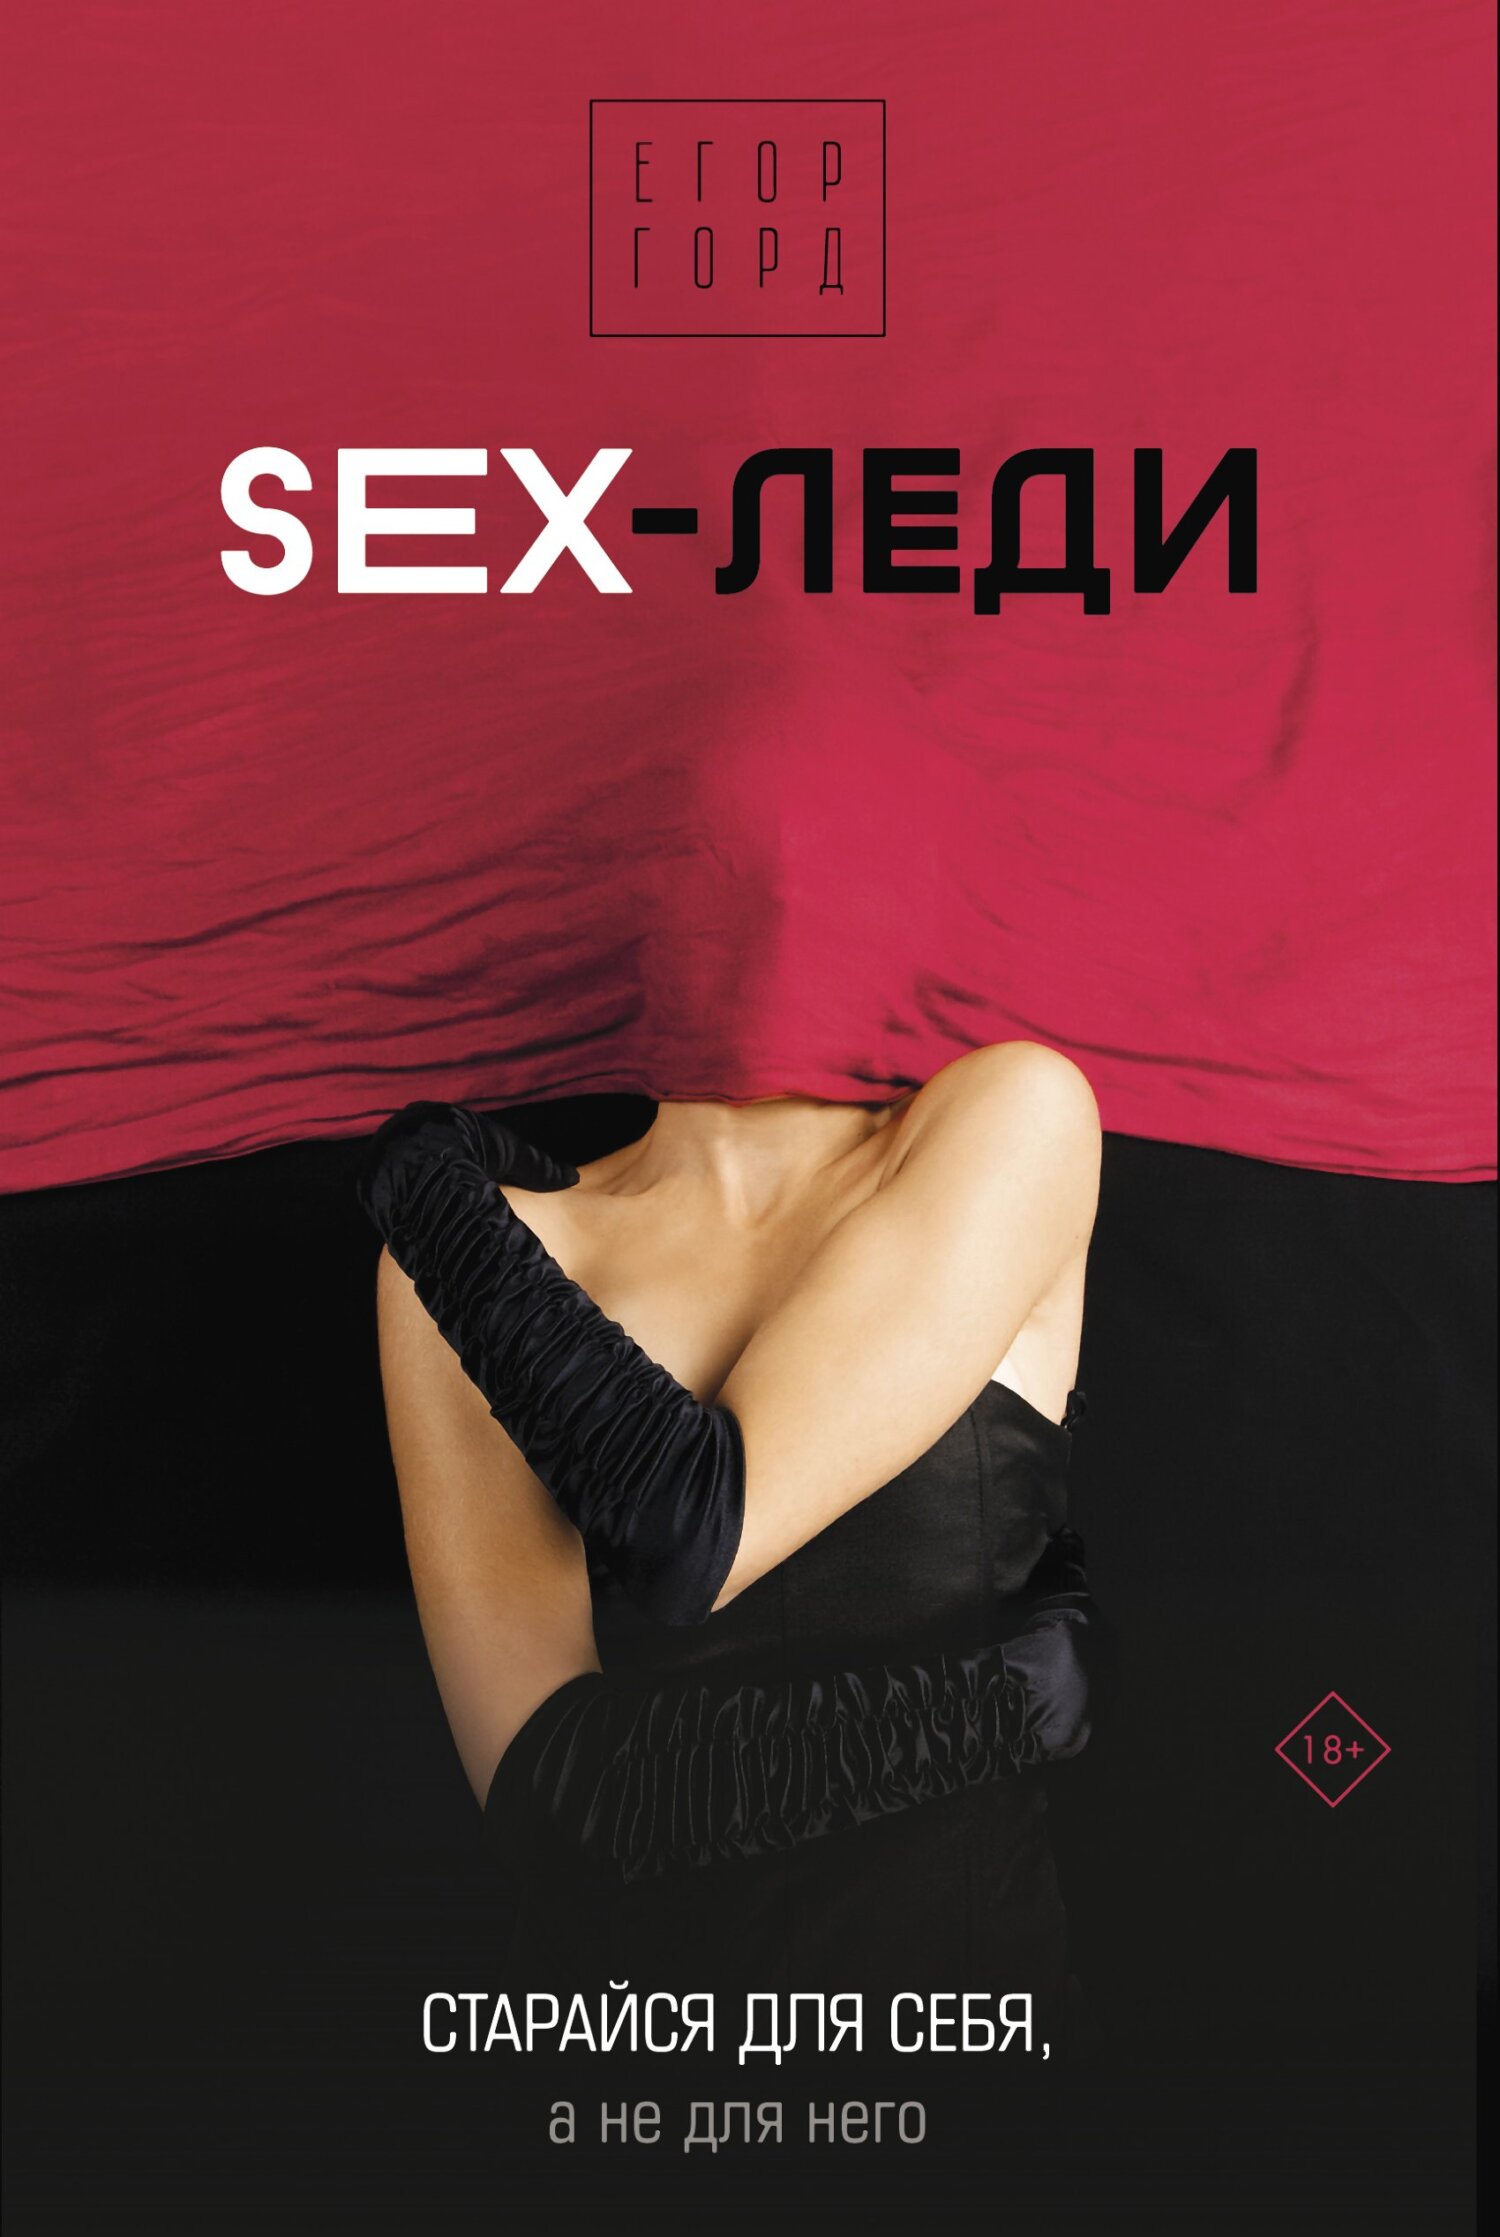 Секси леди - Картинка на телефон / Обои на рабочий стол №